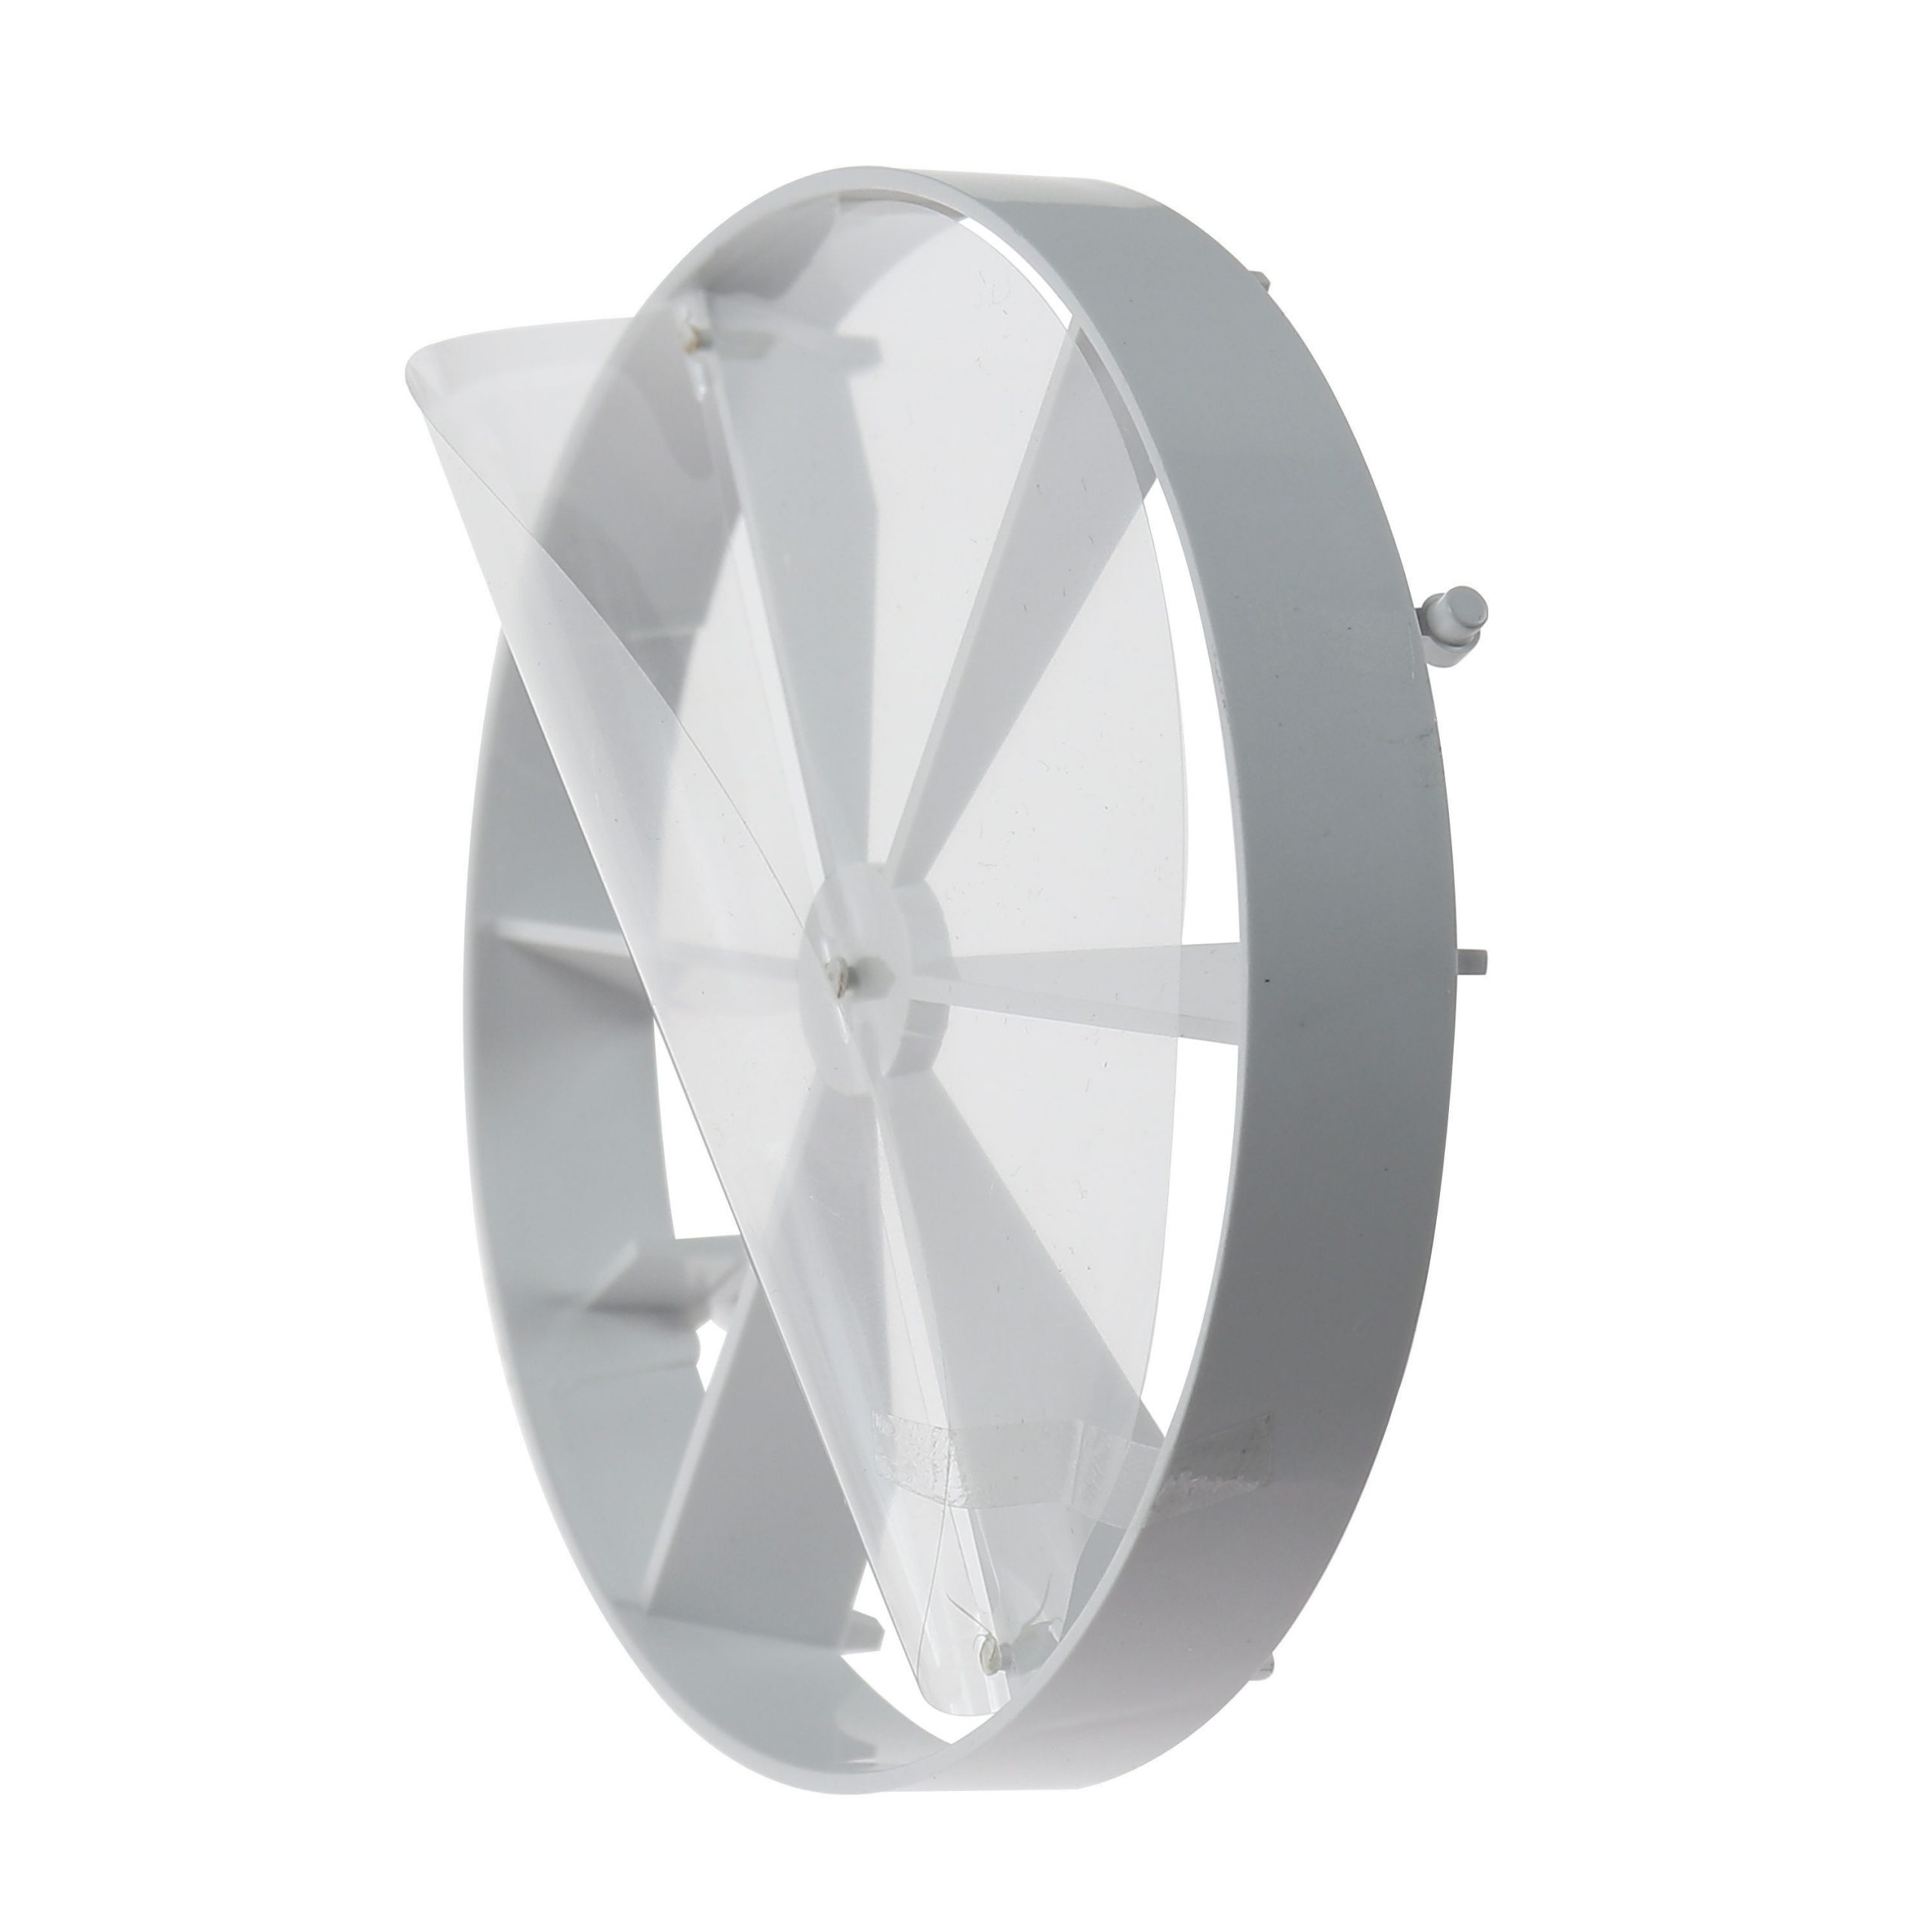 Clapeta antiretur ABS + Folie Plastic pentru seria de ventilatoare dRim